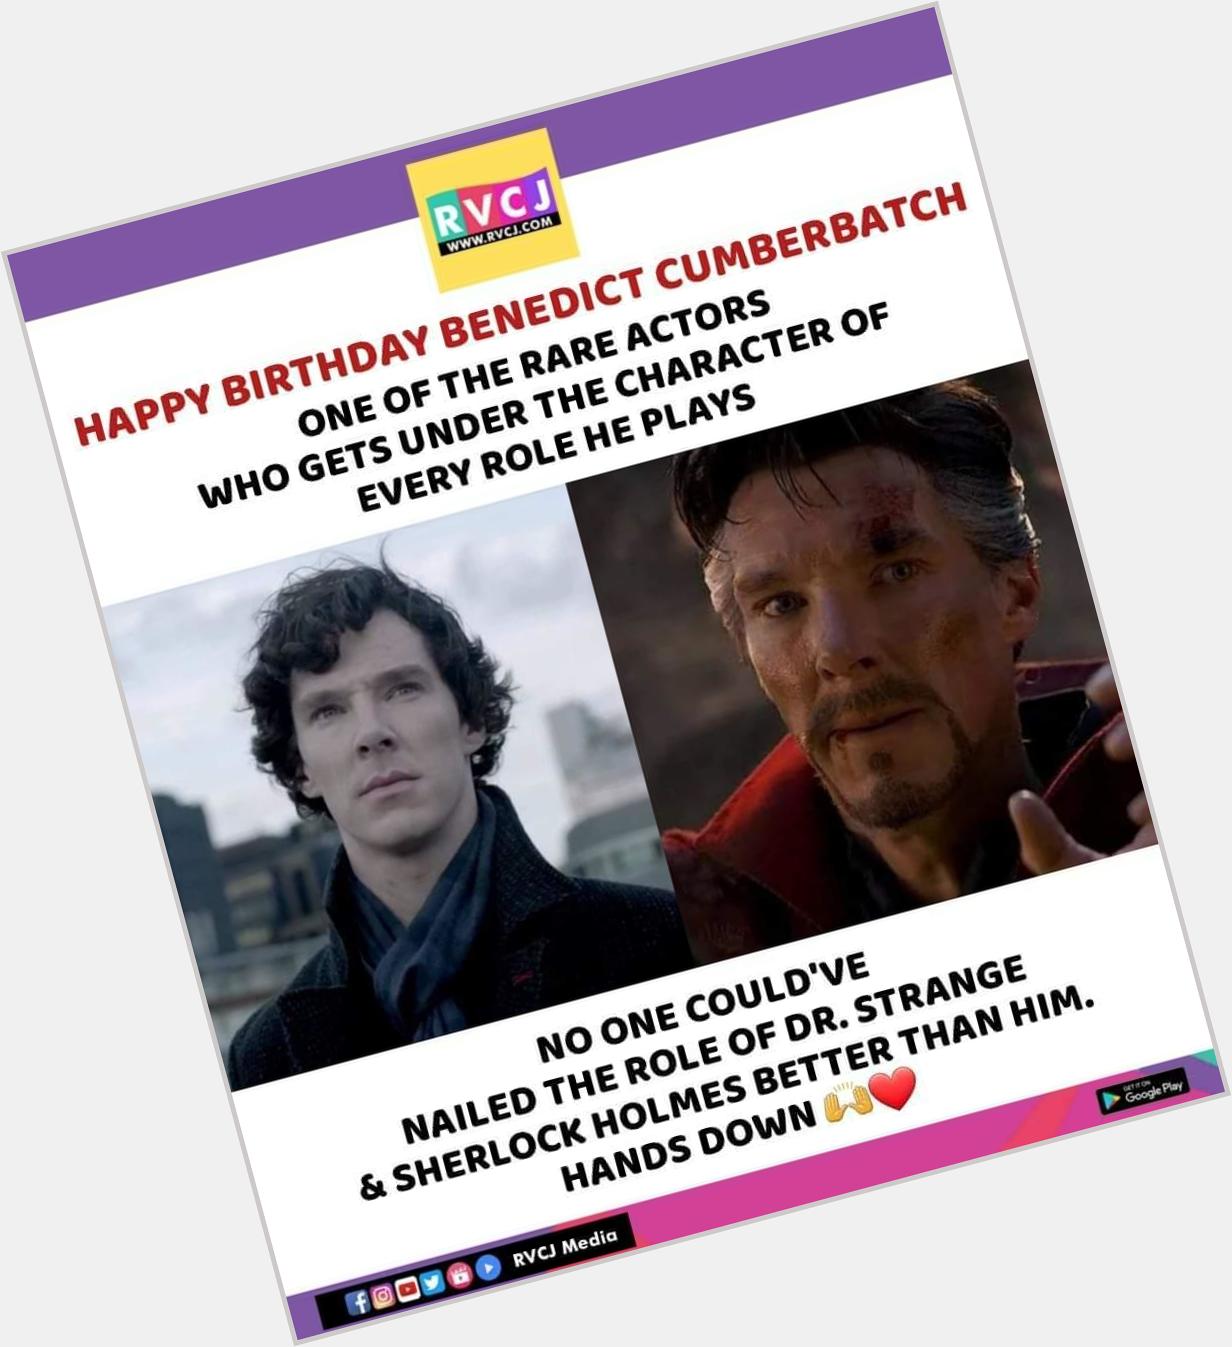 Happy birthday Benedict Cumberbatch  